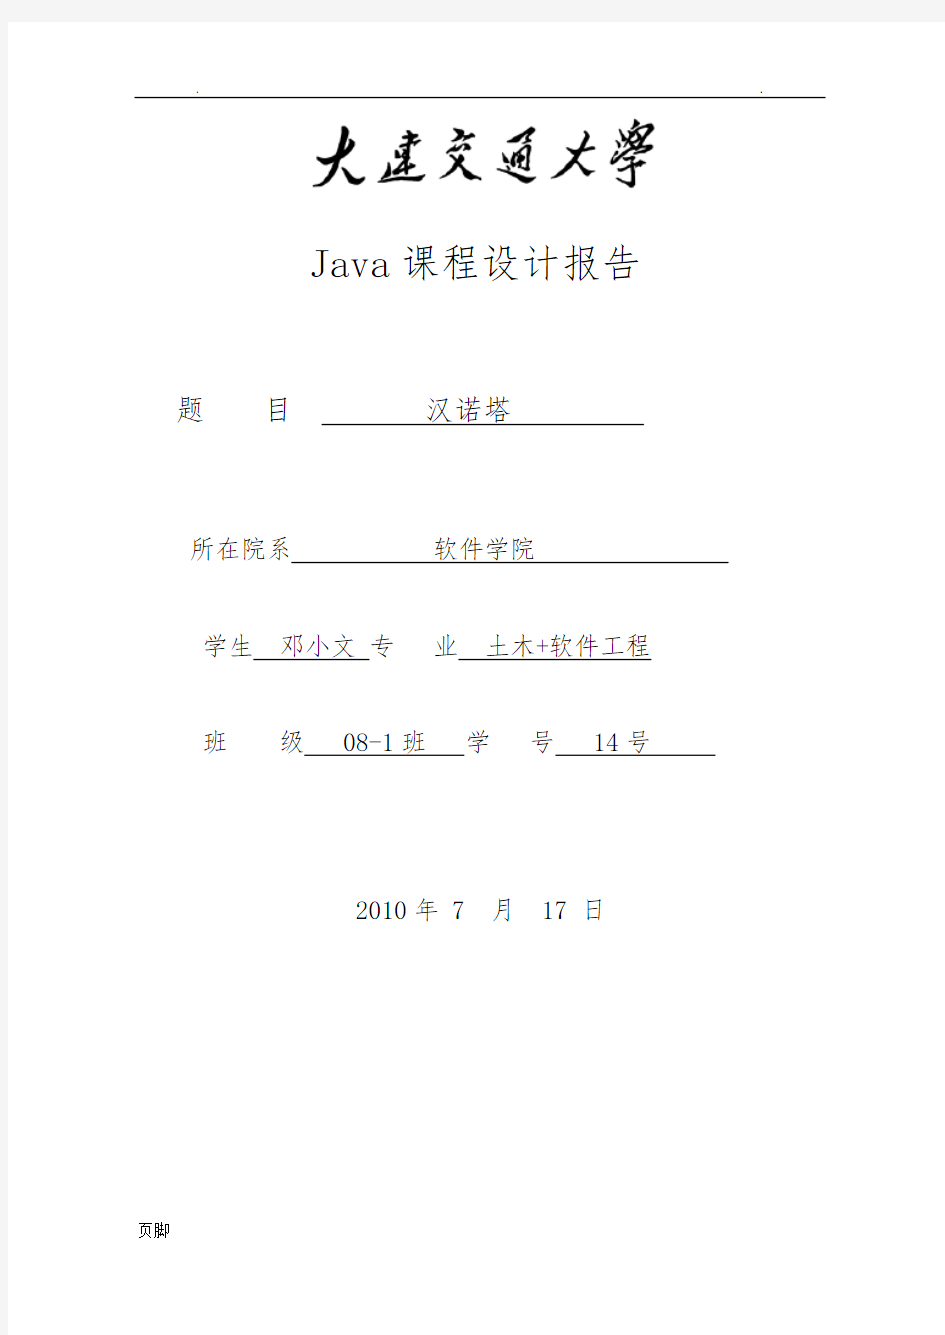 Hannoi塔(汉诺塔)--Java课程设计报告